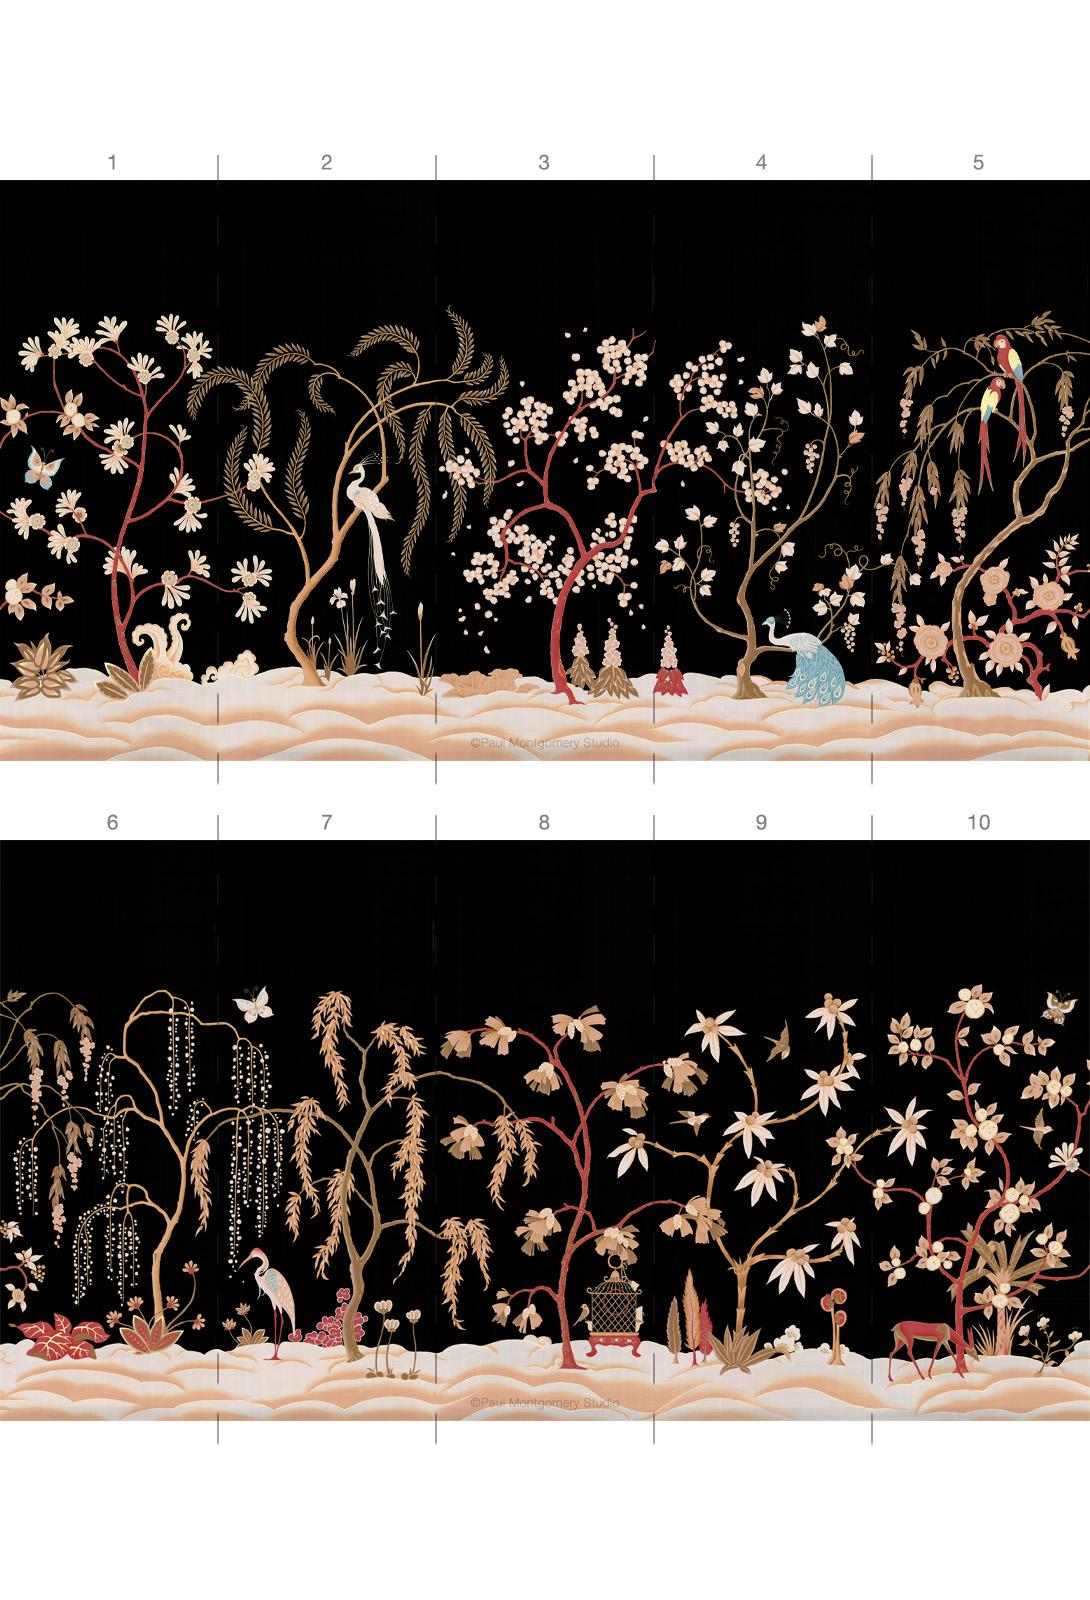 Ginsgerg ist eine Chinoiserie-Wandmalerei, die jedoch im Art-Déco-Stil gehalten ist.  Jedes Paneel ist auf schwarzer Seide mit cremefarbenen, roten und goldenen Farben von Hand bemalt.  Das Wandgemälde besteht aus 10 aufeinanderfolgenden, drei Fuß